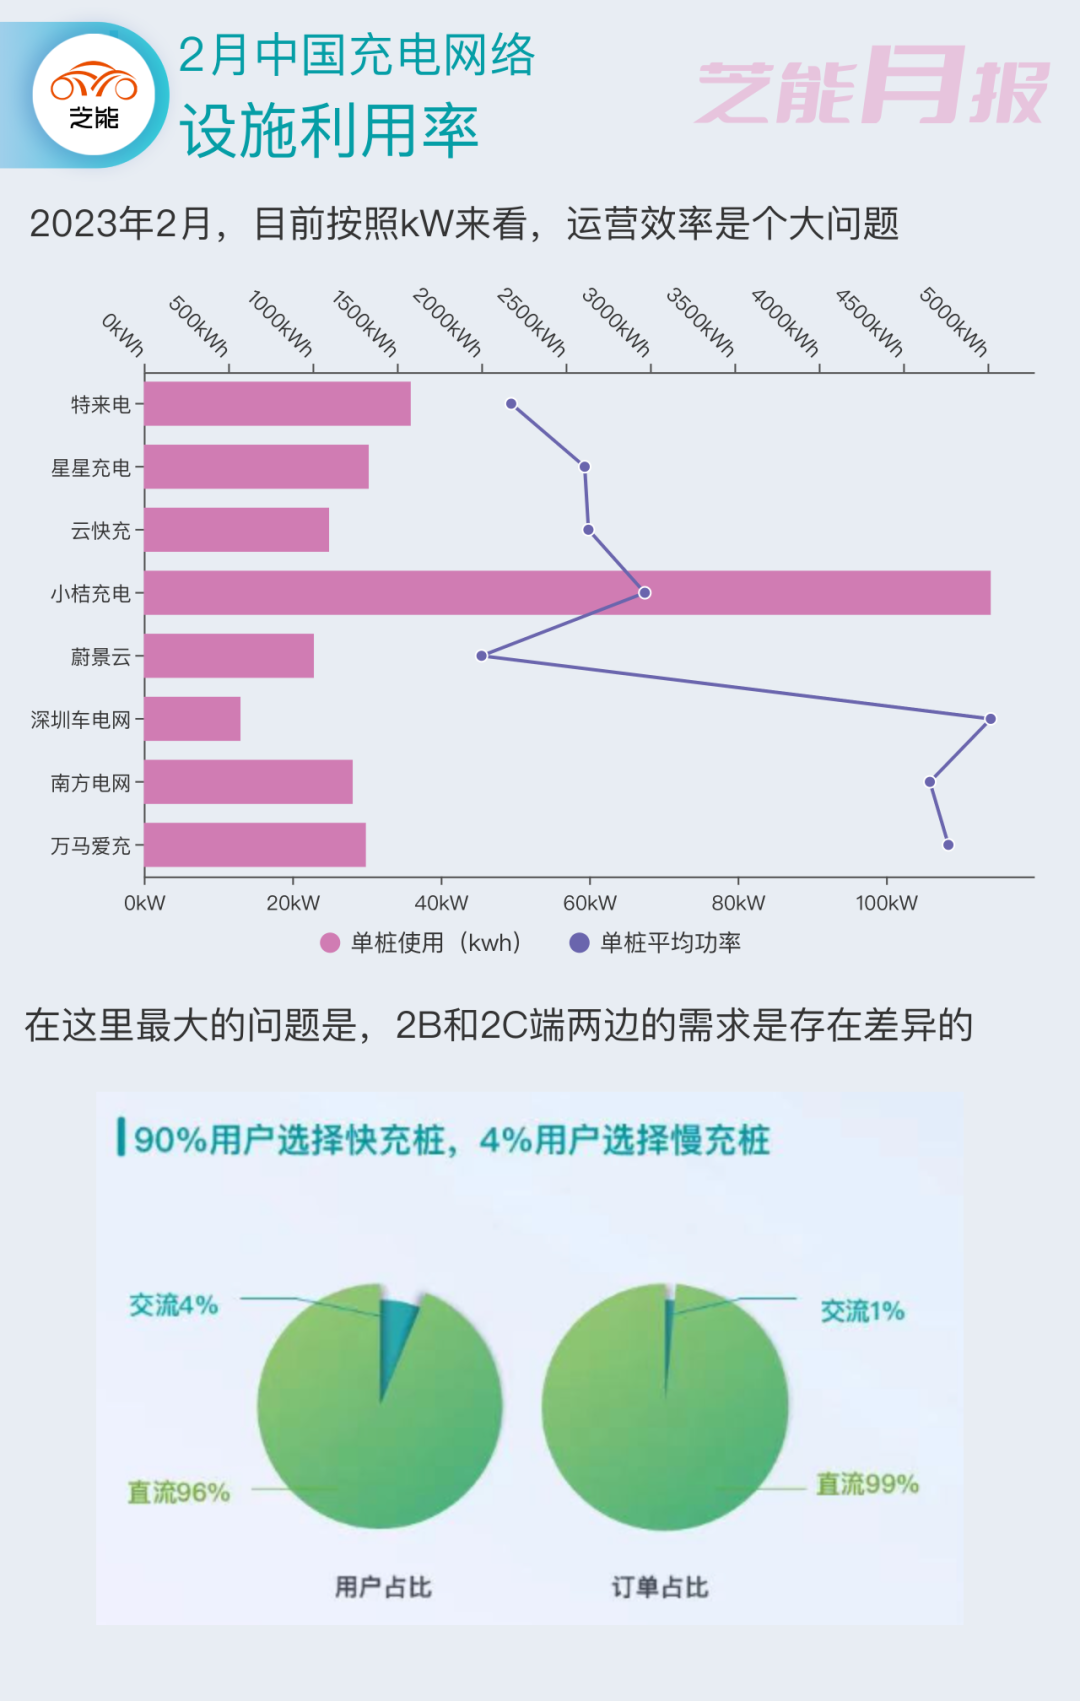 2023年2月中國充電設施市場報告